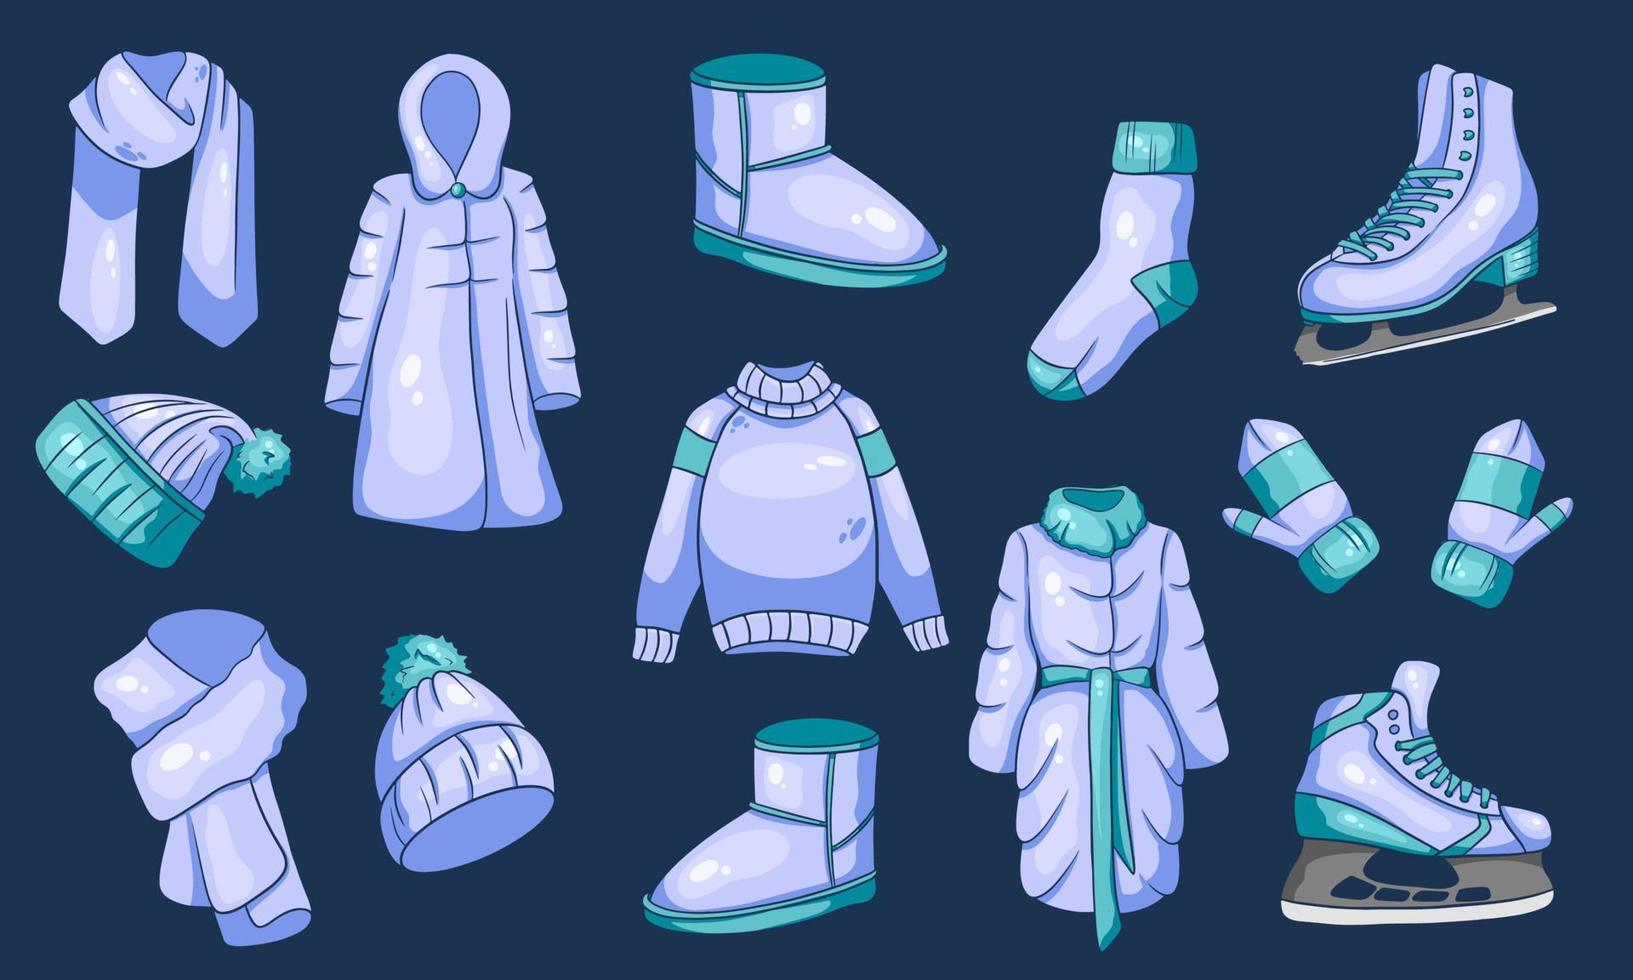 un conjunto de cosas de invierno. colección de ropa de abrigo. estilo de dibujos animados. vector